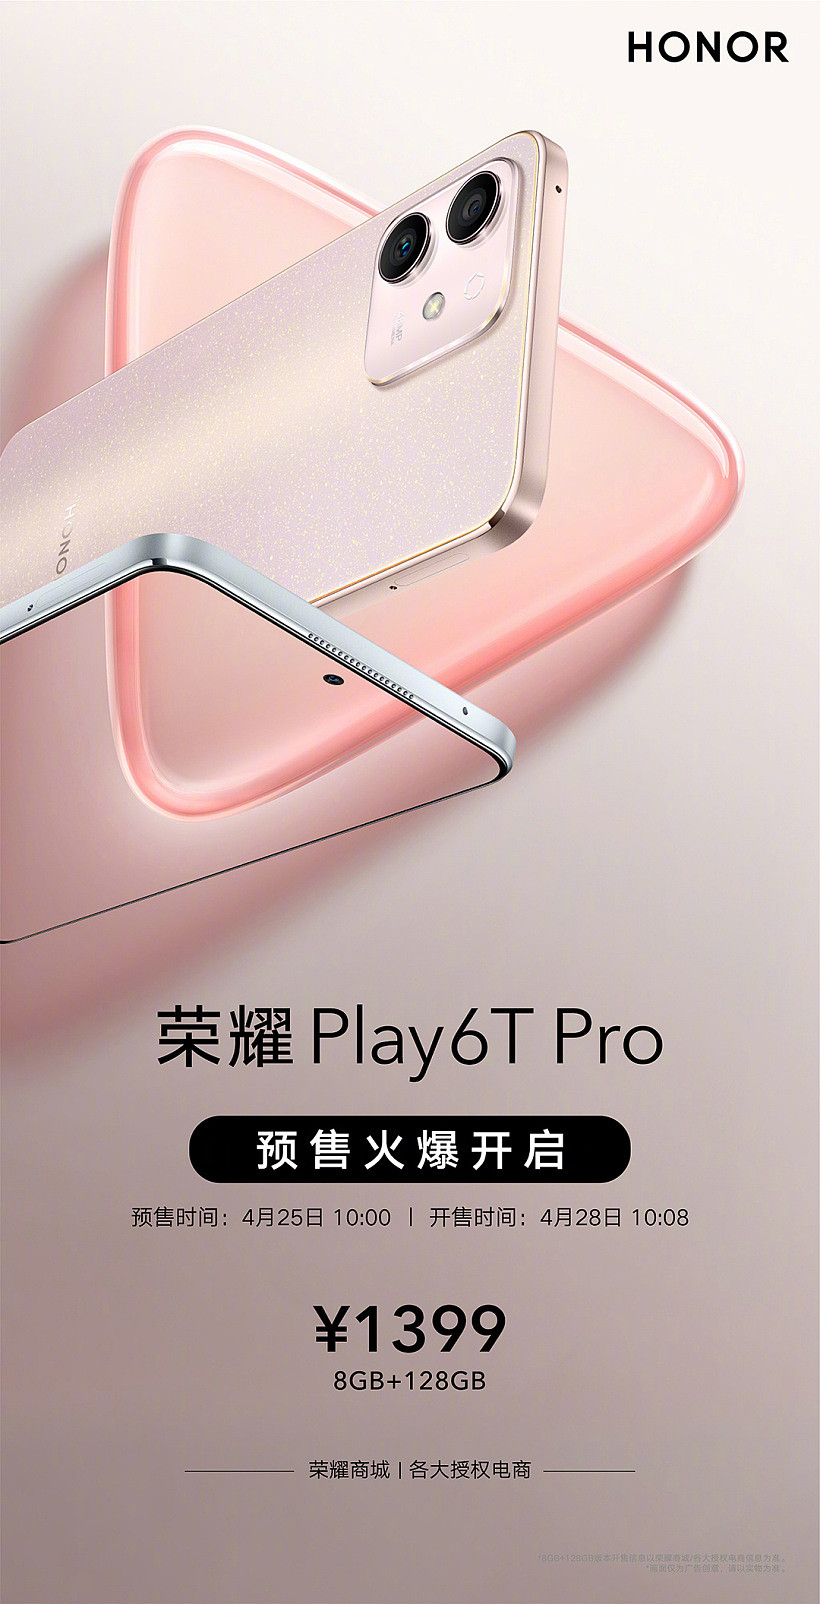 荣耀 Play6T Pro 8GB+128GB 版本今日开启预售，售价 1399 元 - 1